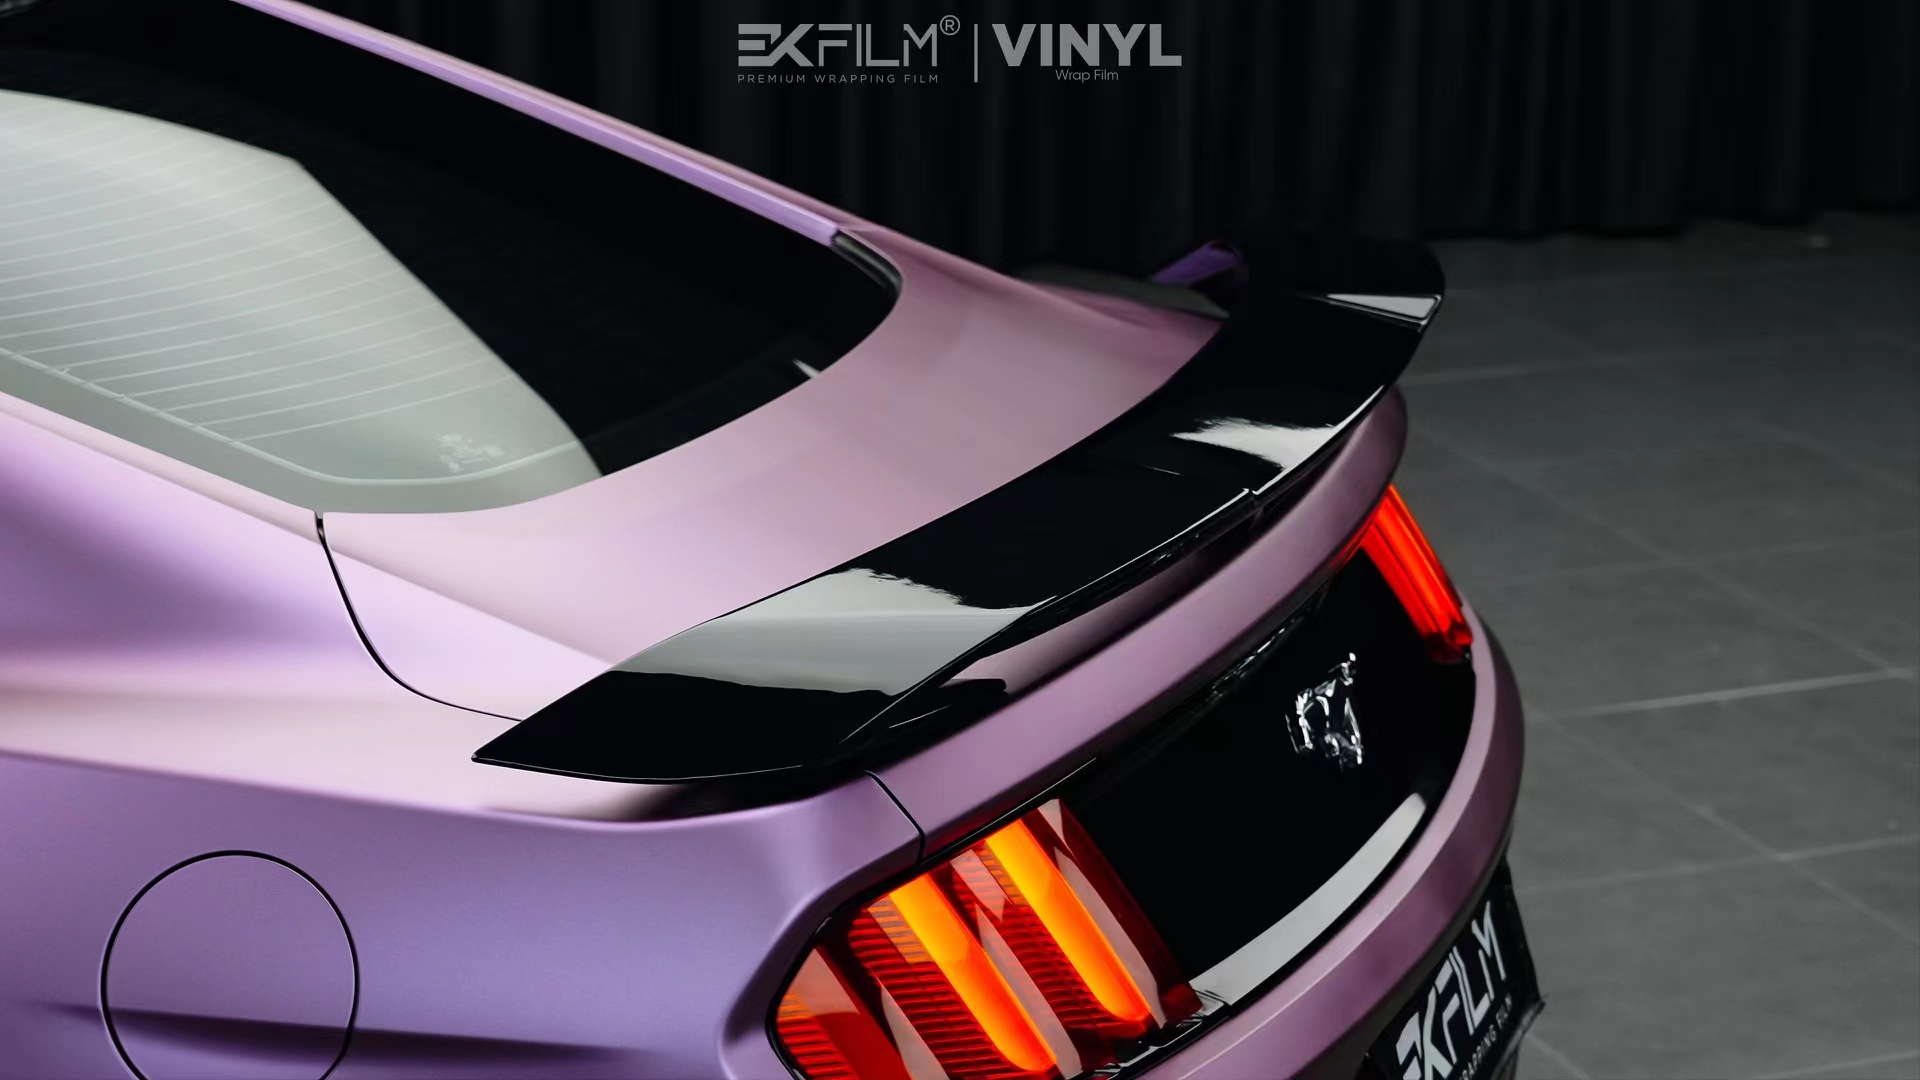 野马ekfilm改色膜树莓粉紫,完美勾勒出车身线条